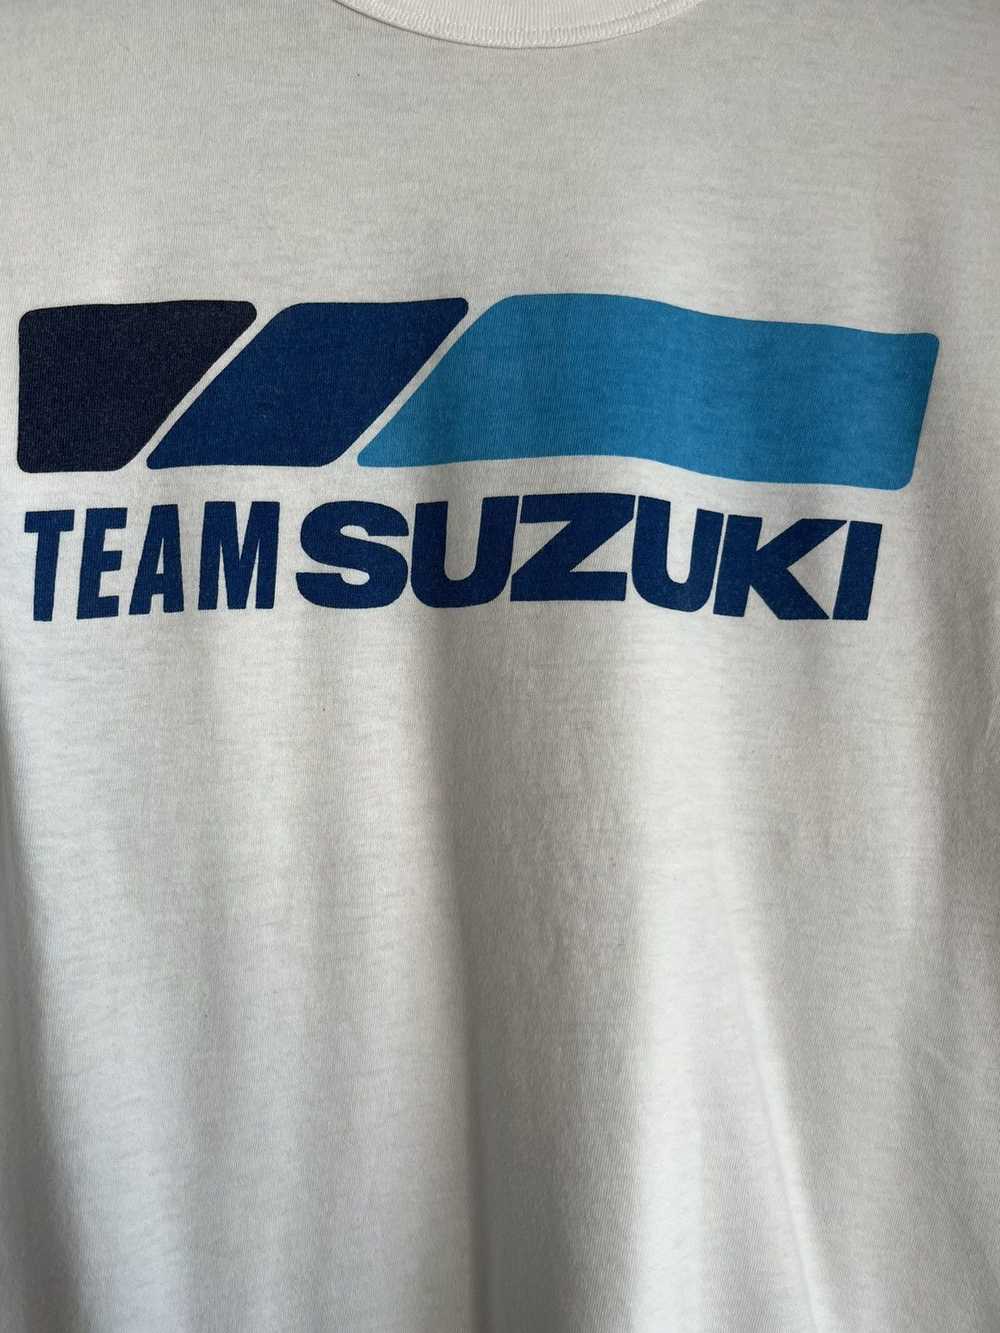 Vintage Team suzuki ft5 - image 2